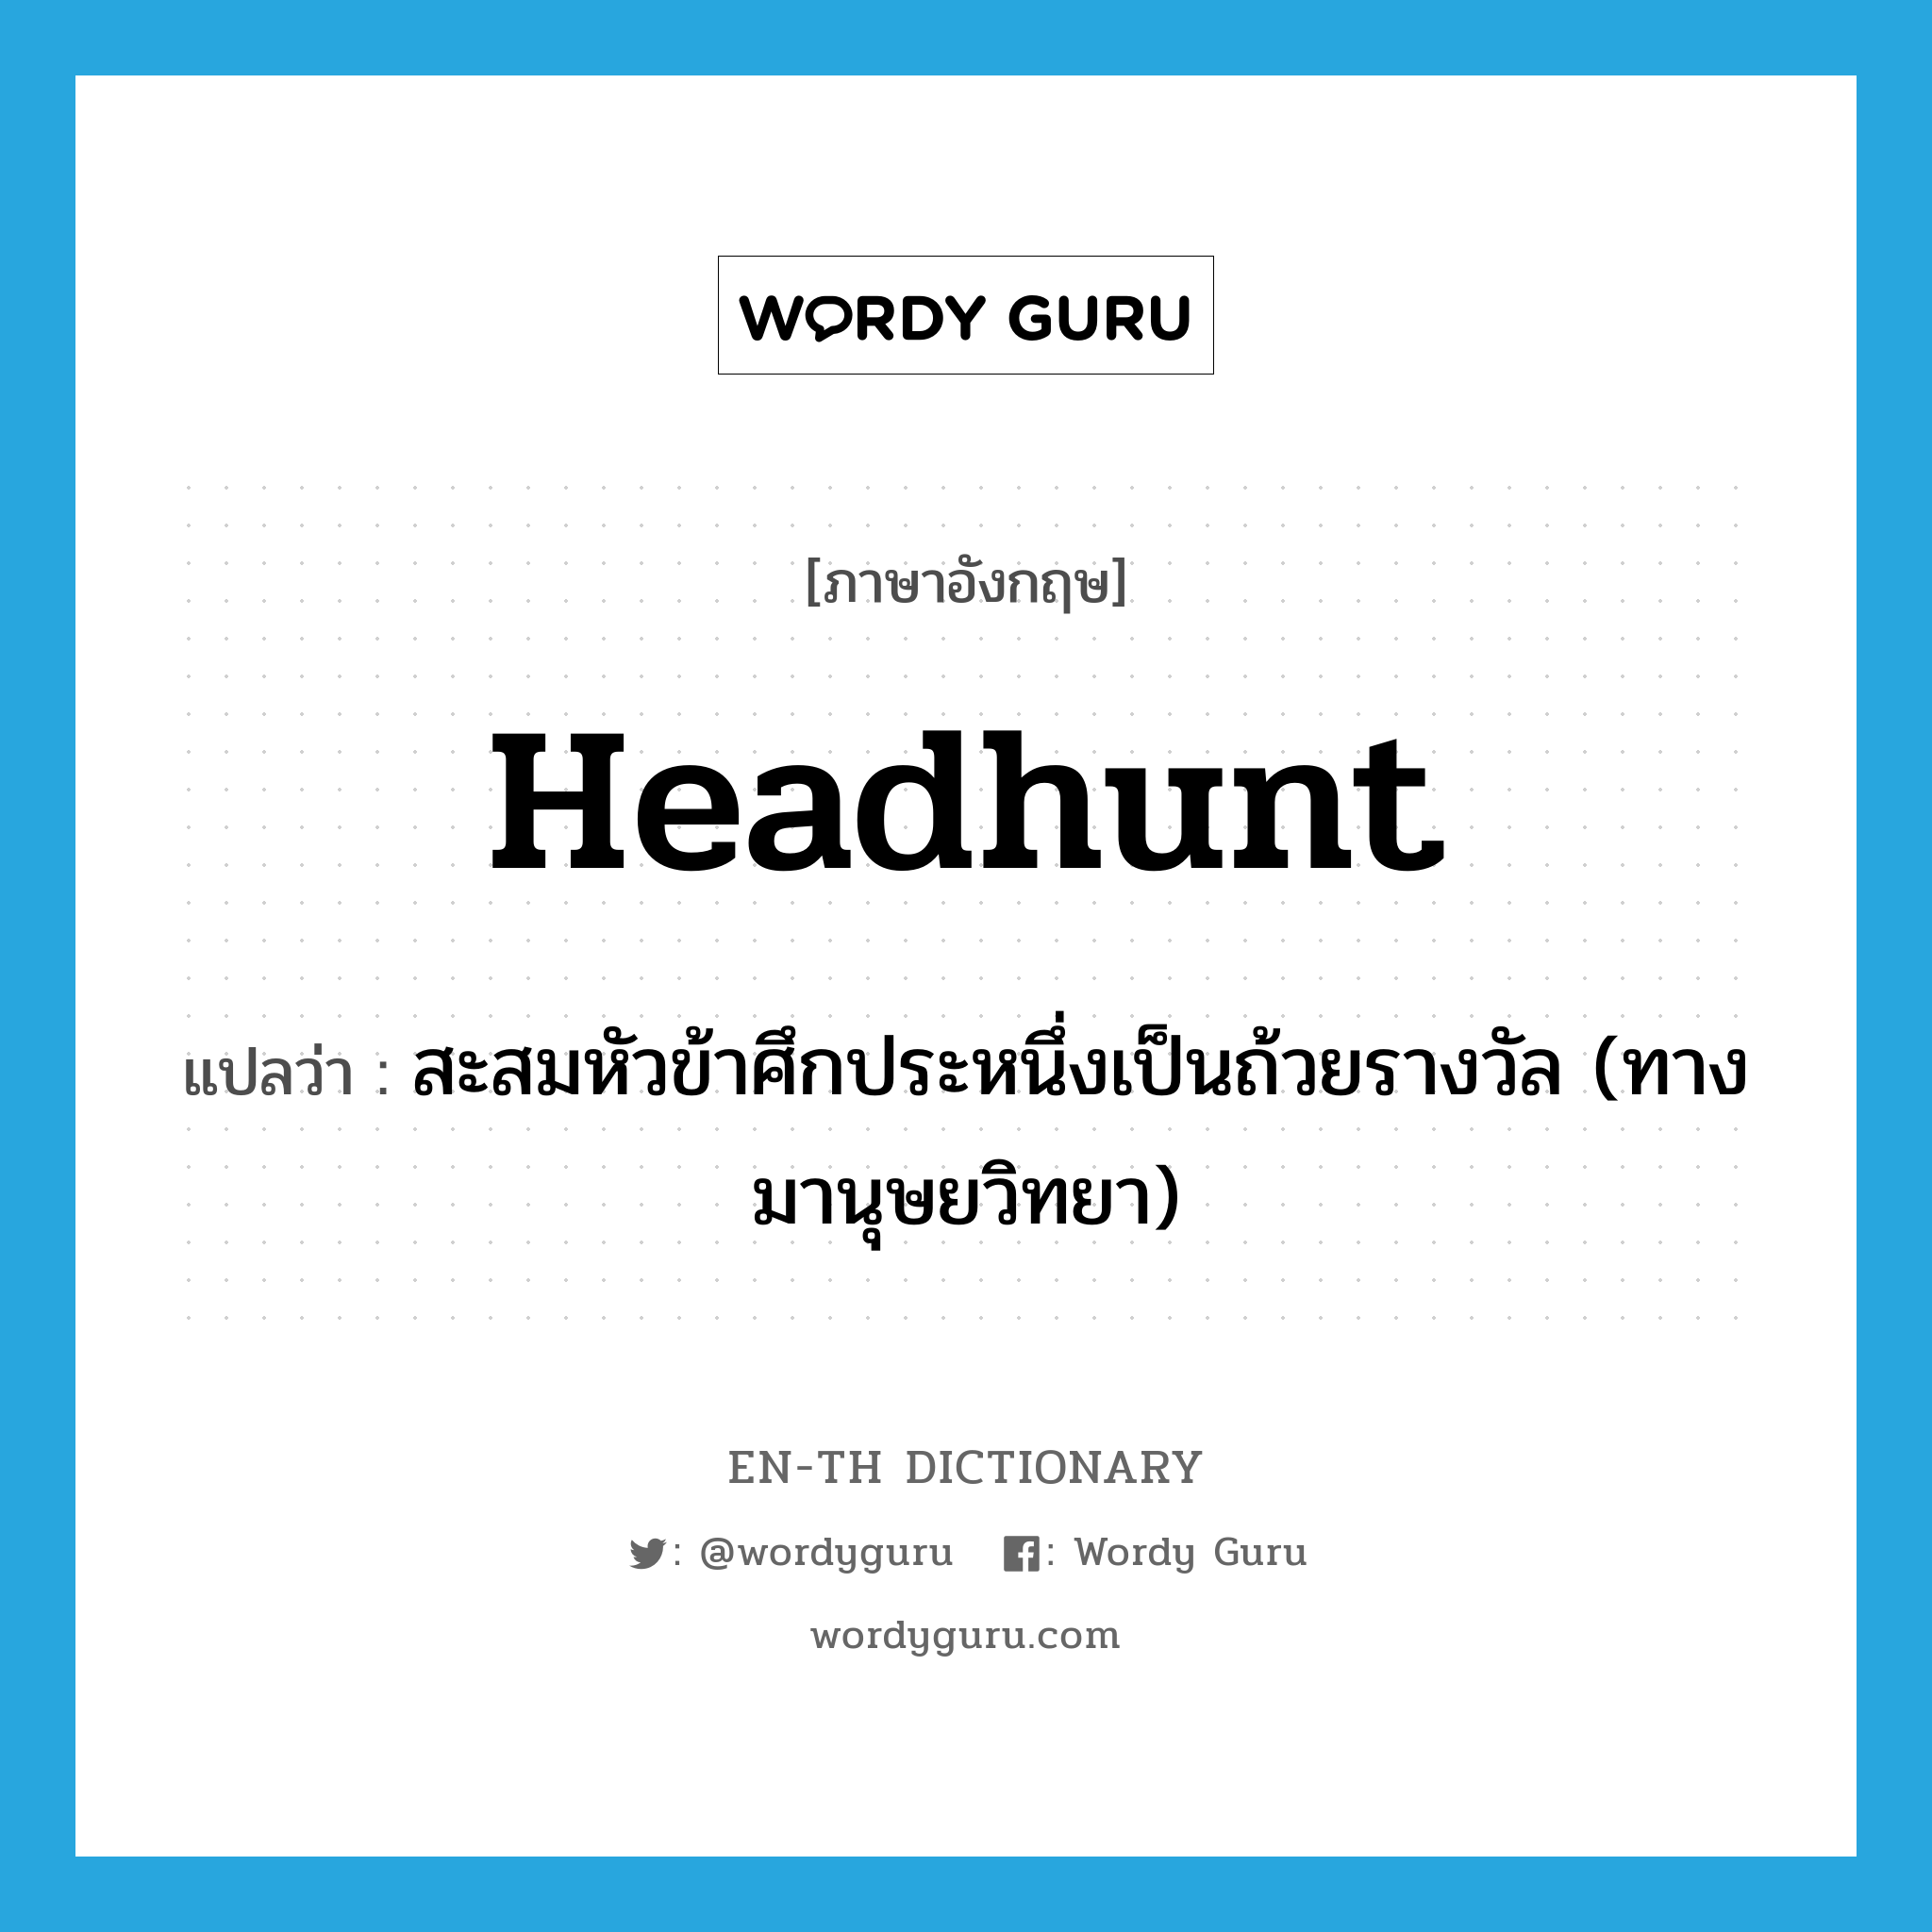 headhunt แปลว่า?, คำศัพท์ภาษาอังกฤษ headhunt แปลว่า สะสมหัวข้าศึกประหนึ่งเป็นถ้วยรางวัล (ทางมานุษยวิทยา) ประเภท VI หมวด VI